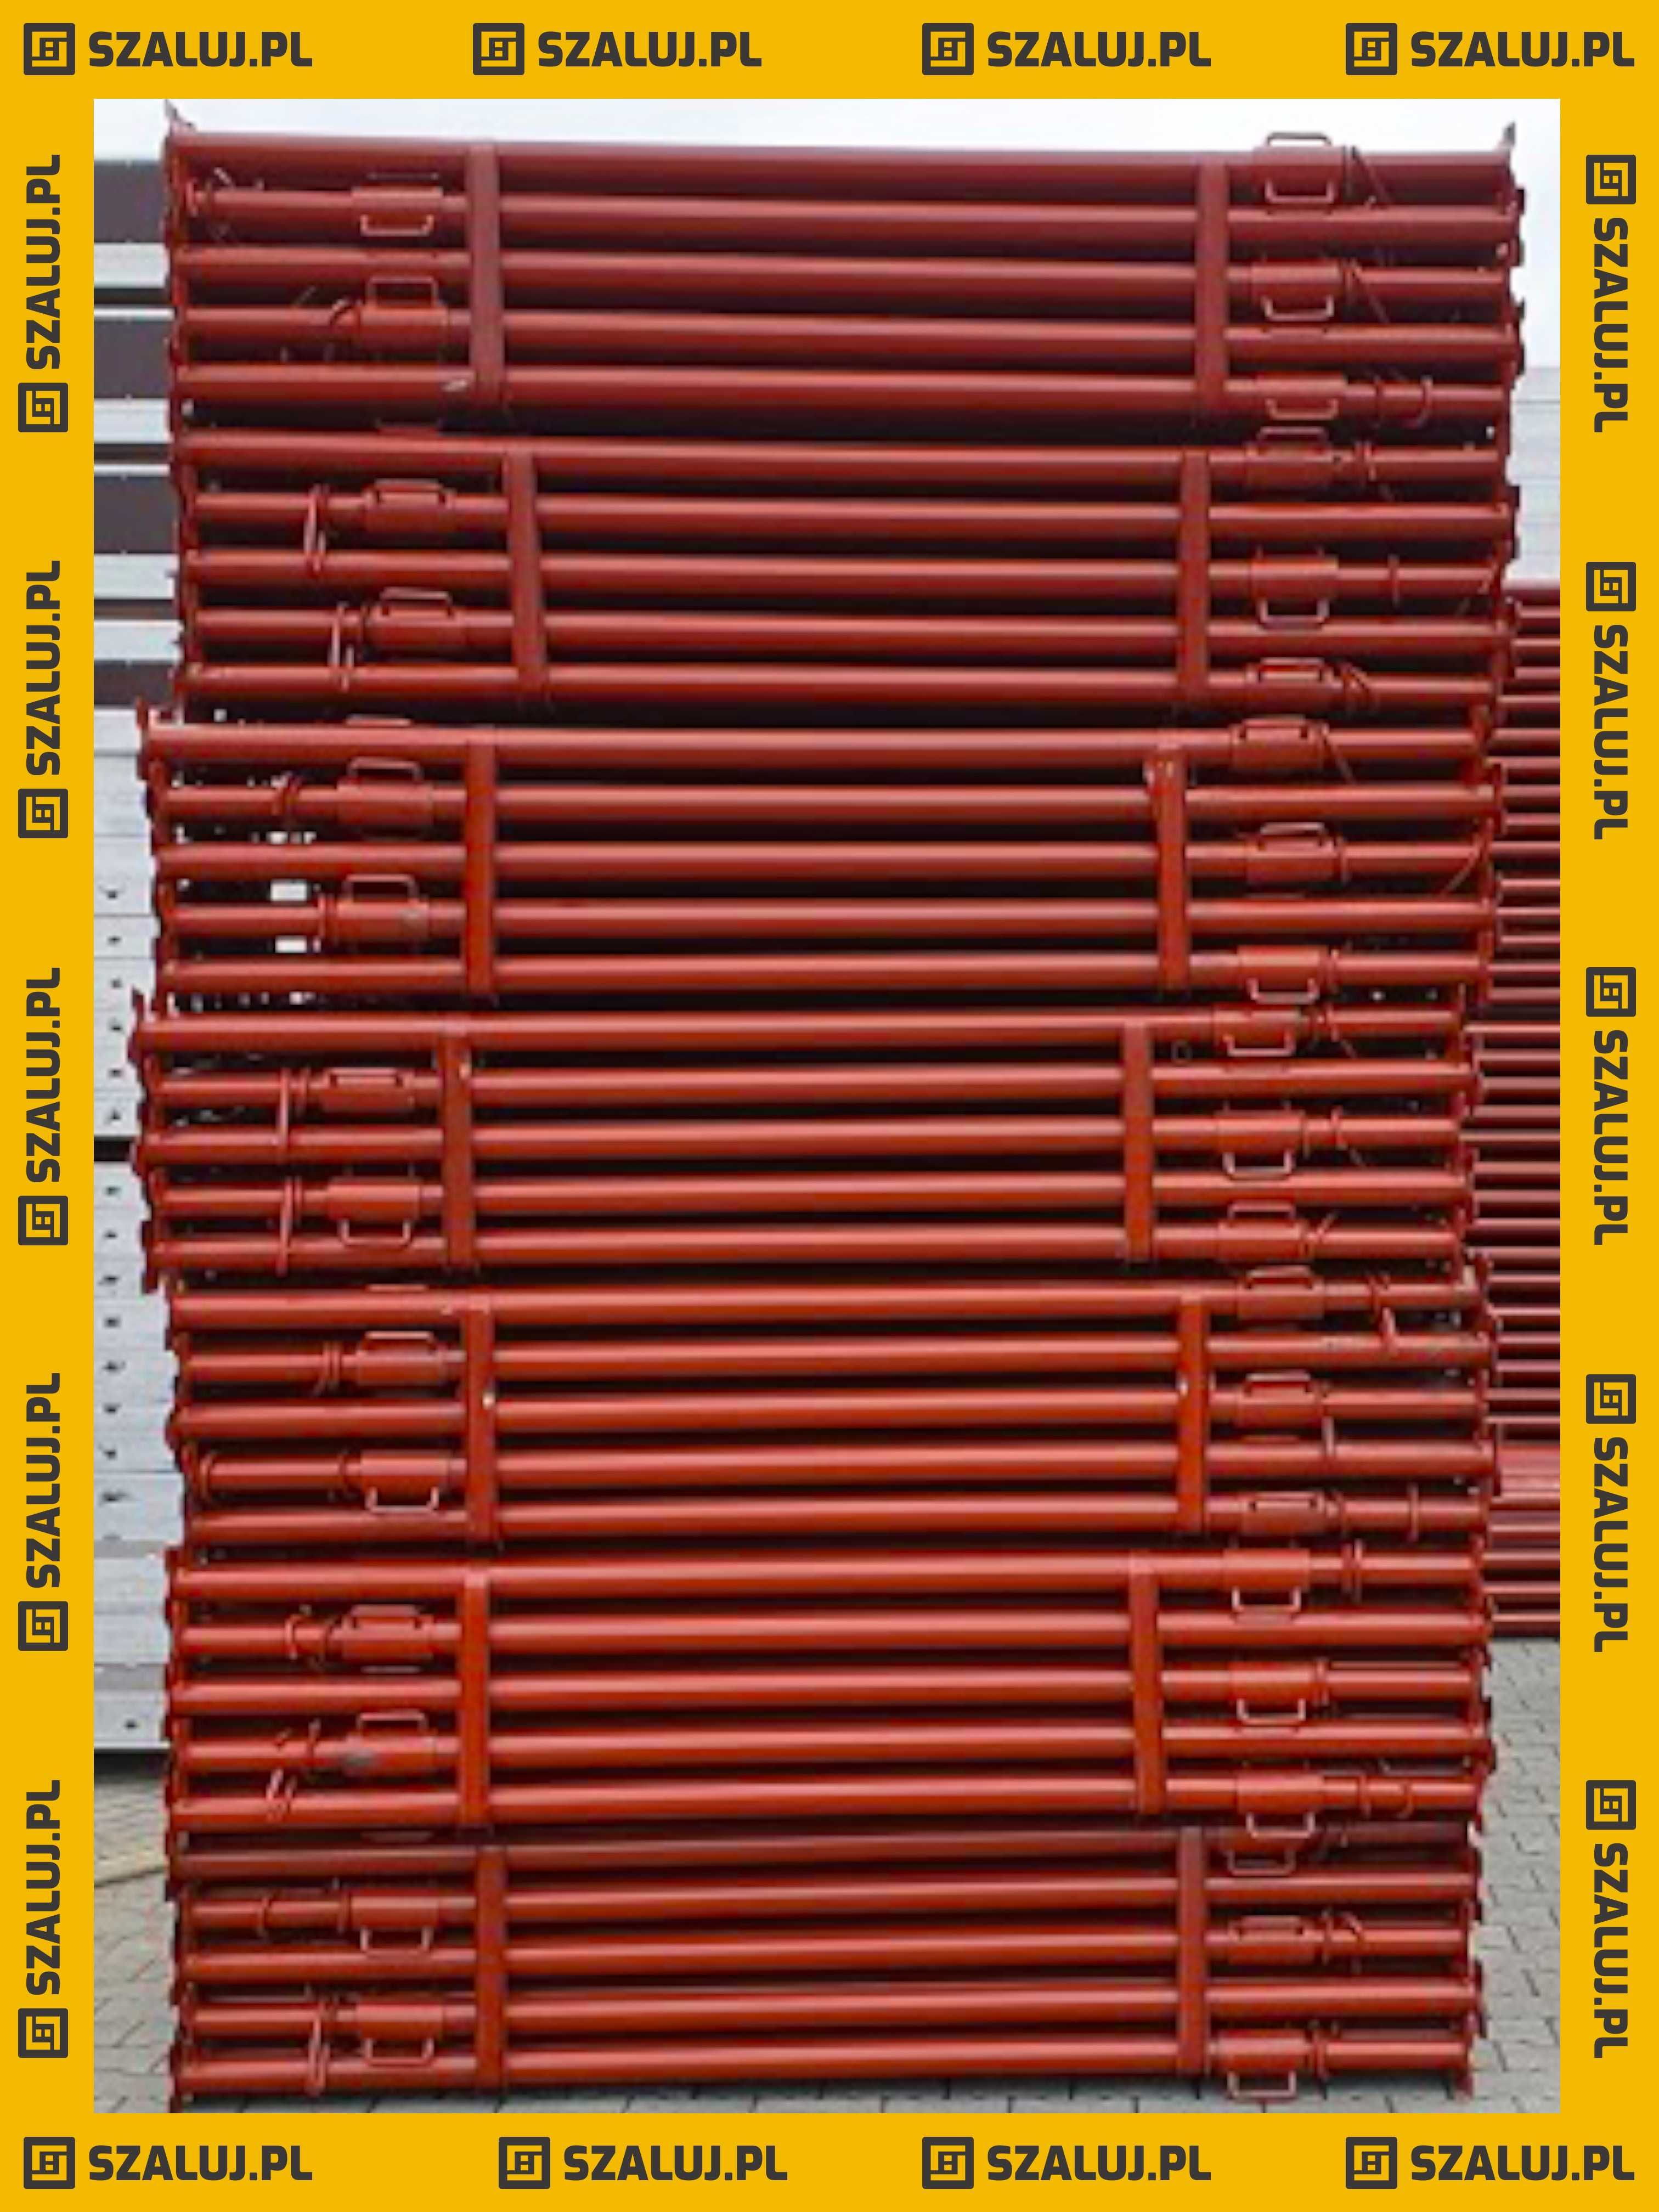 Podpory Stropowe stemple lakierowane czerwone 3,6m